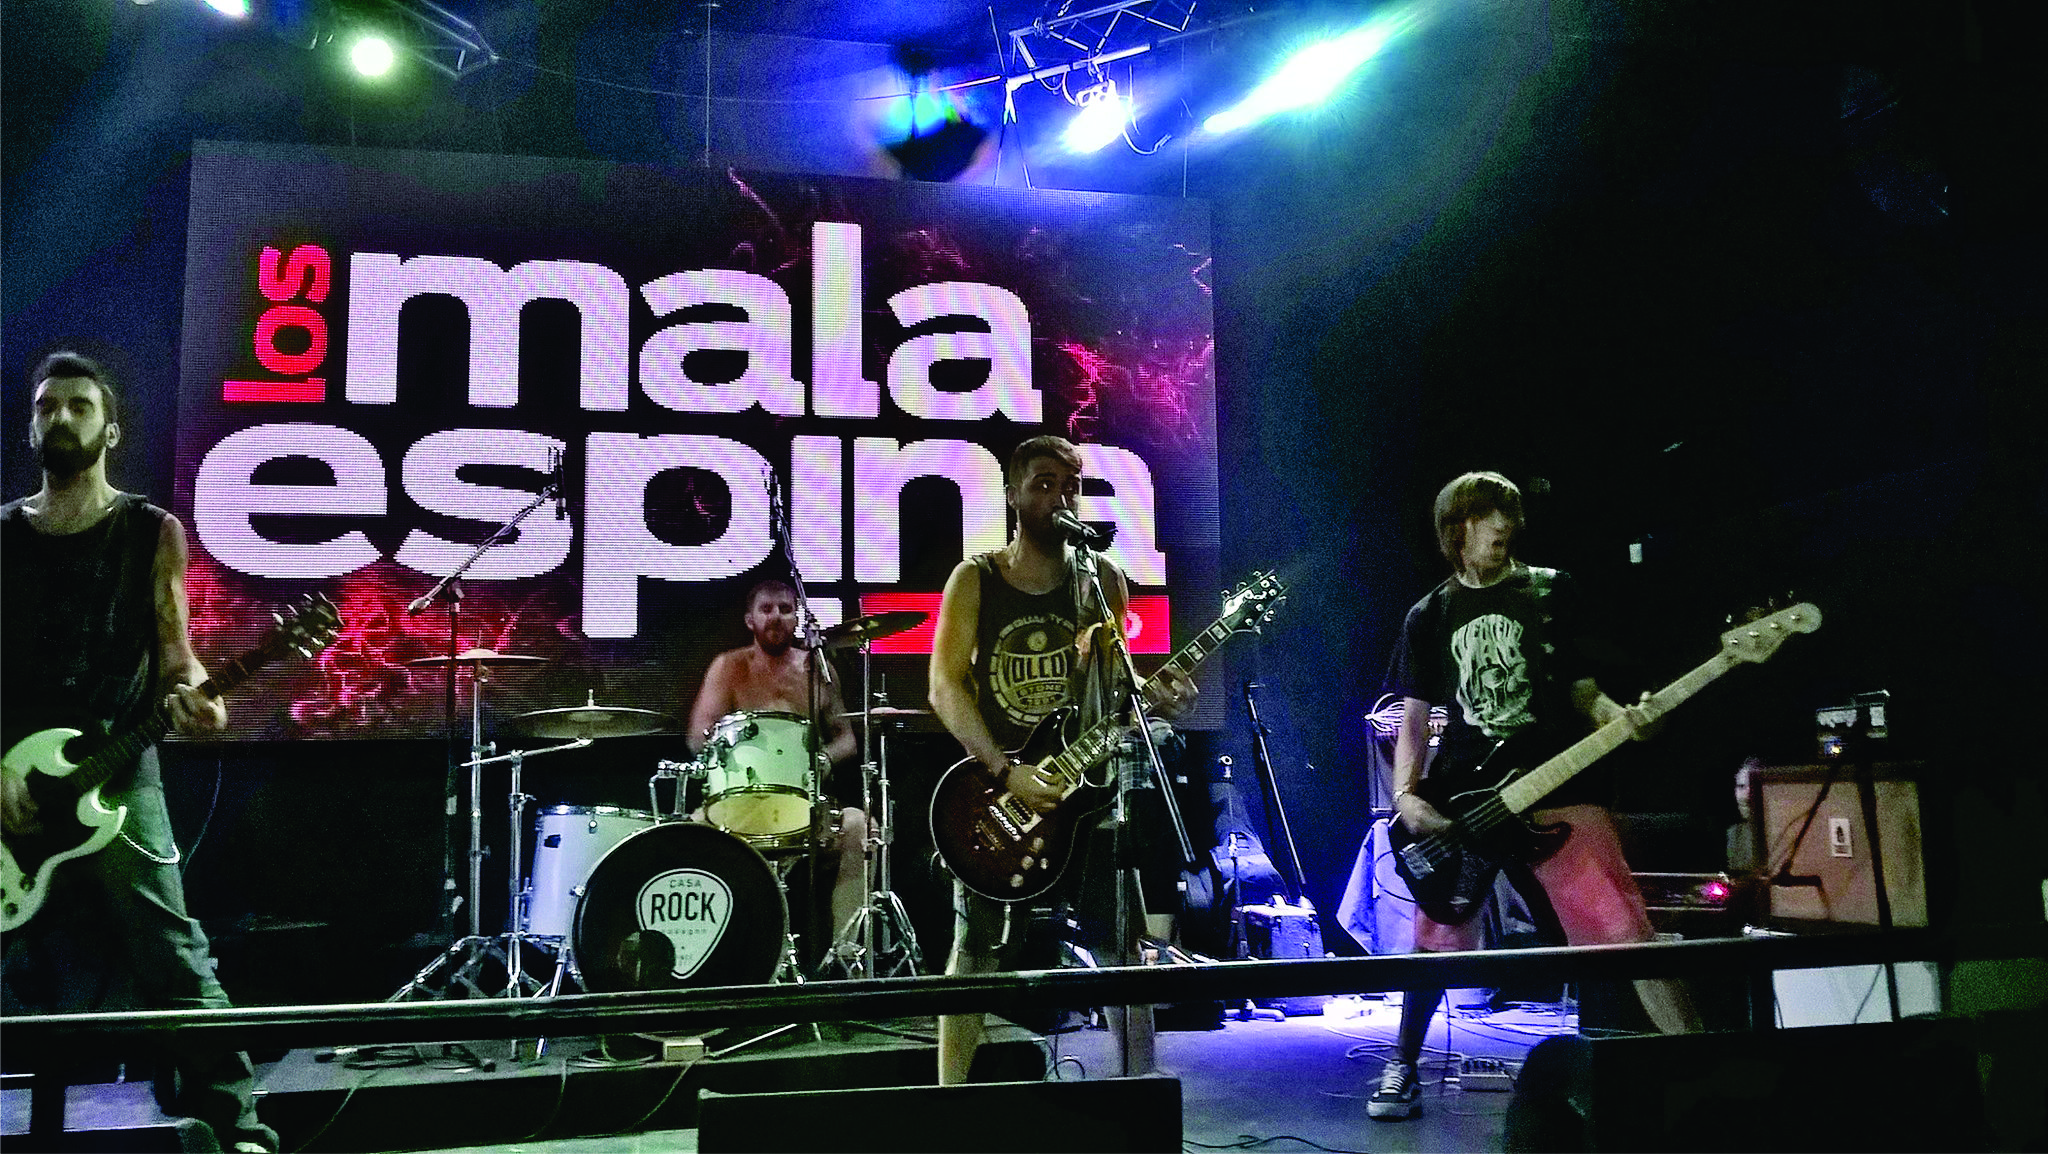 “Grita lo que piensas”: Punk Rock Fest con Mala Espina